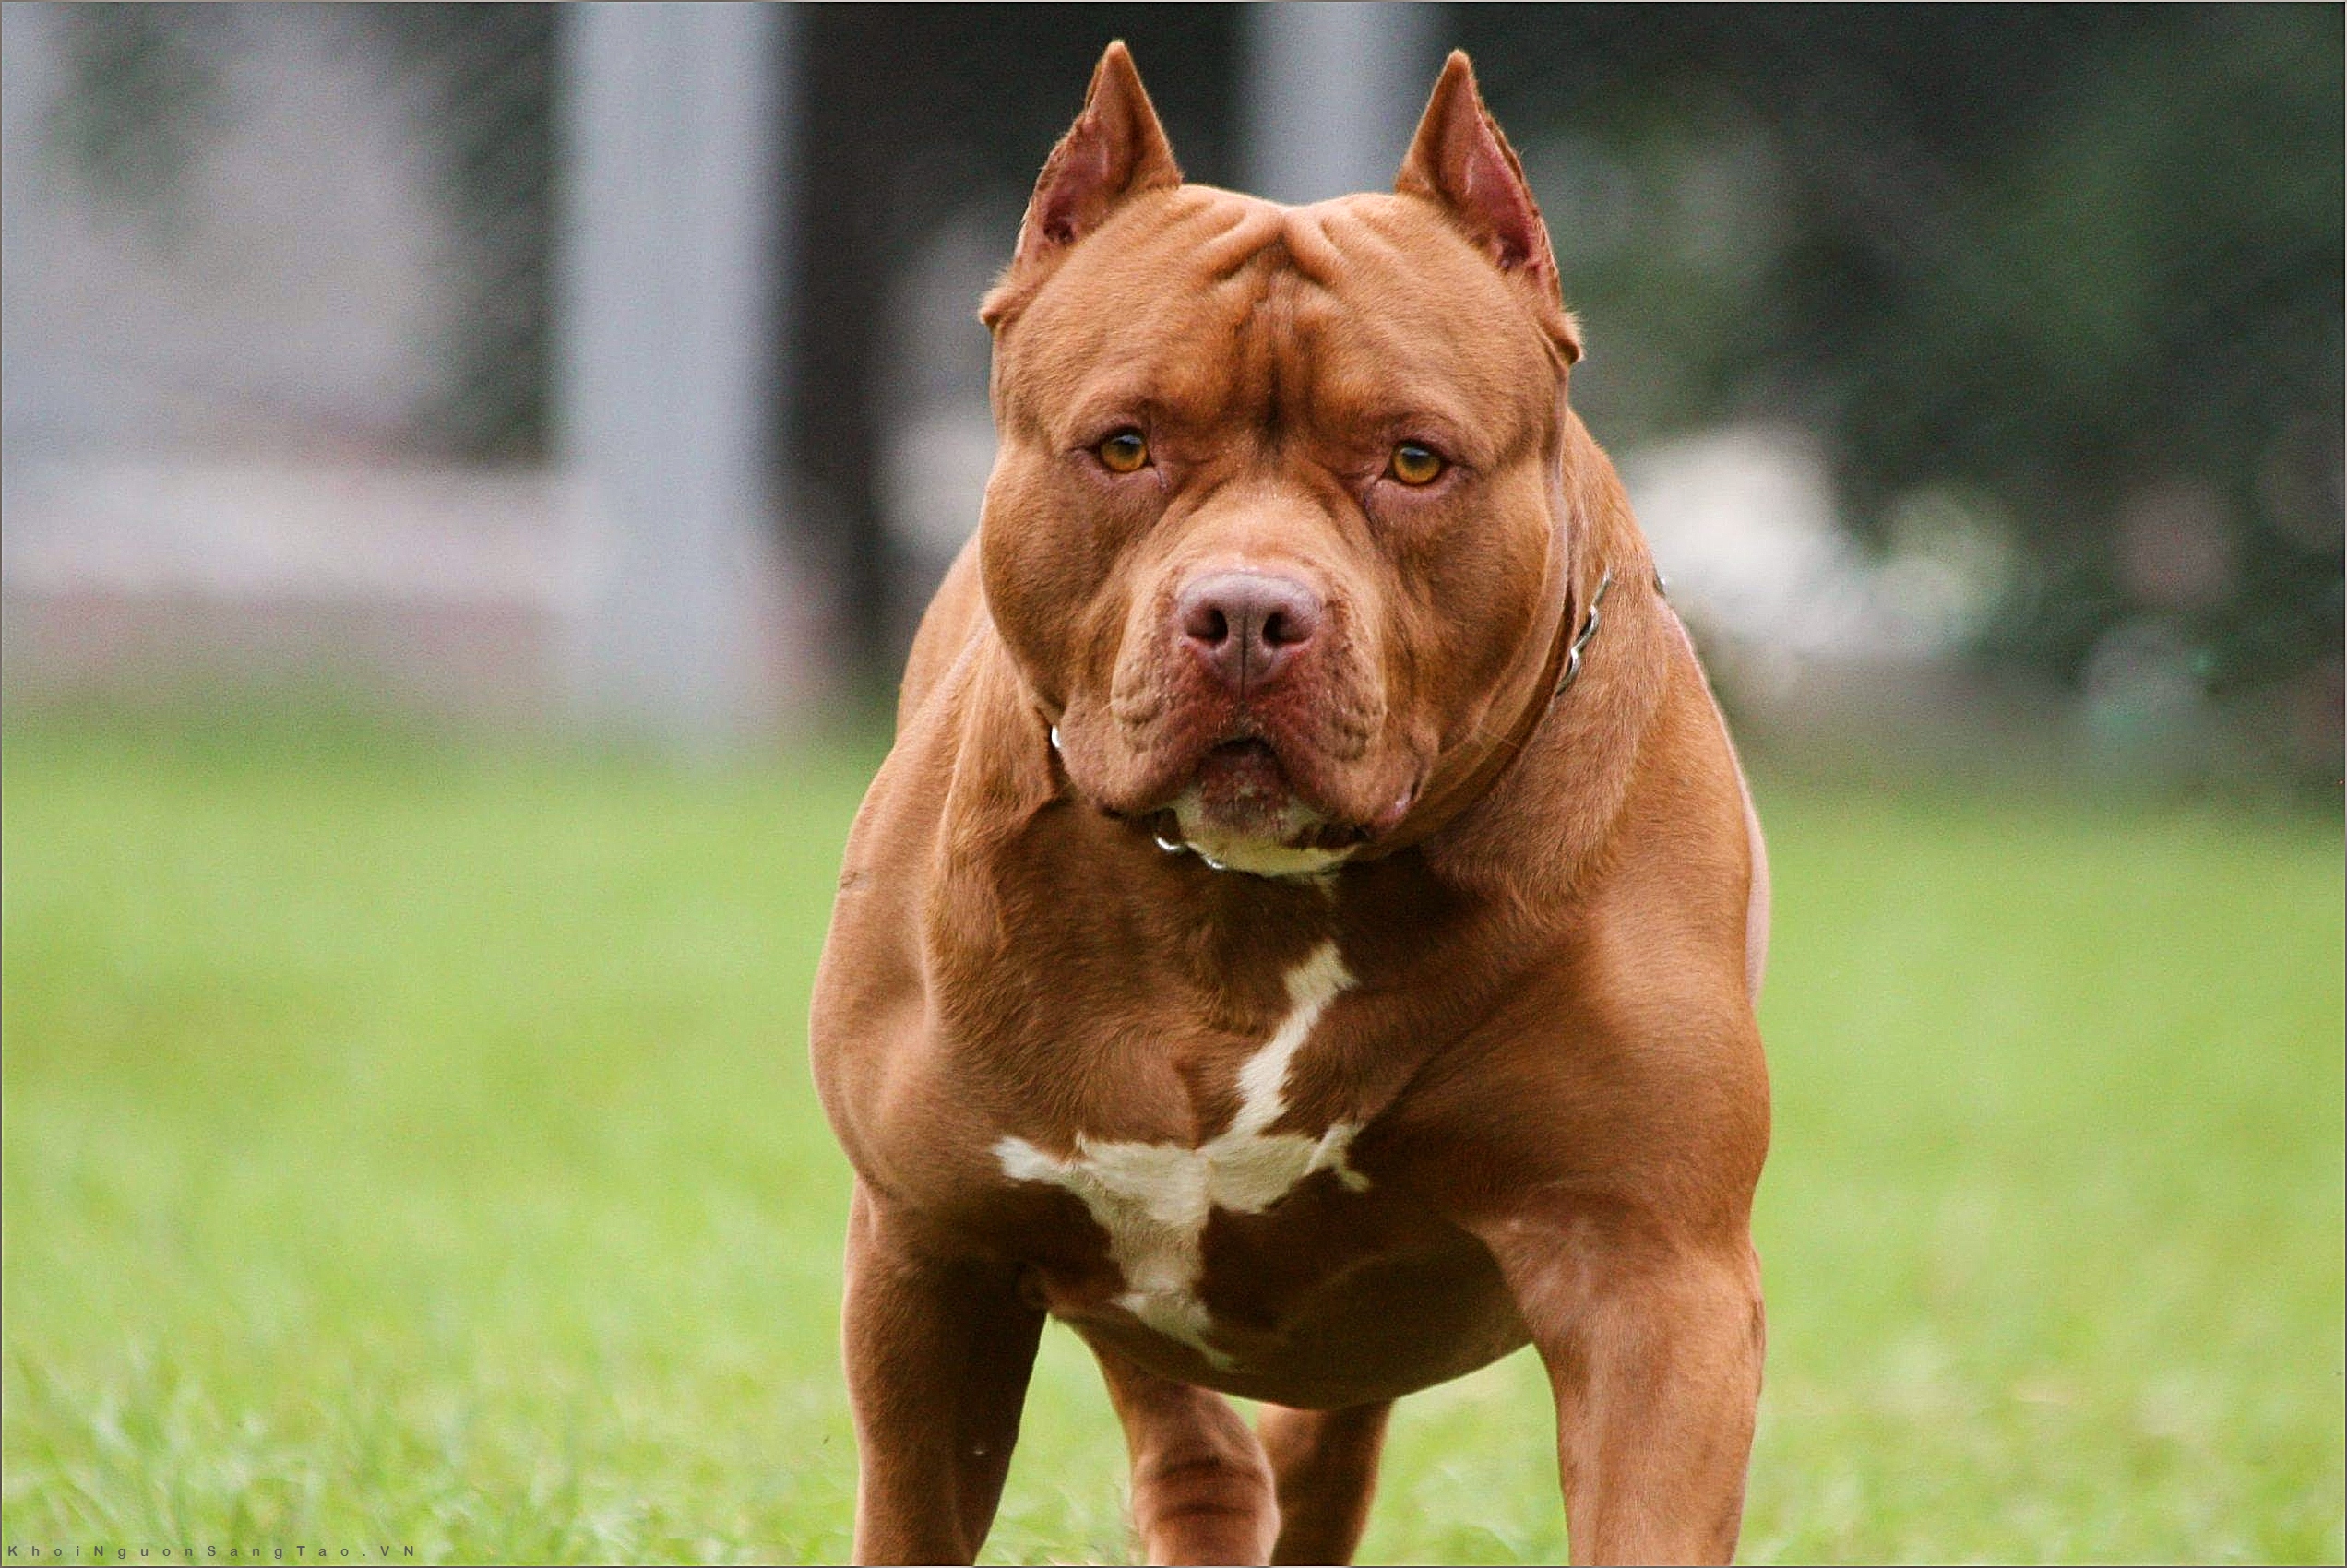 Chó Pitbull được biết đến với ngoại hình vạm vỡ, tinh thần mạnh mẽ và trung thành. Xem hình chó Pitbull để hiểu rõ hơn về sức mạnh và sự thông minh của giống chó này.